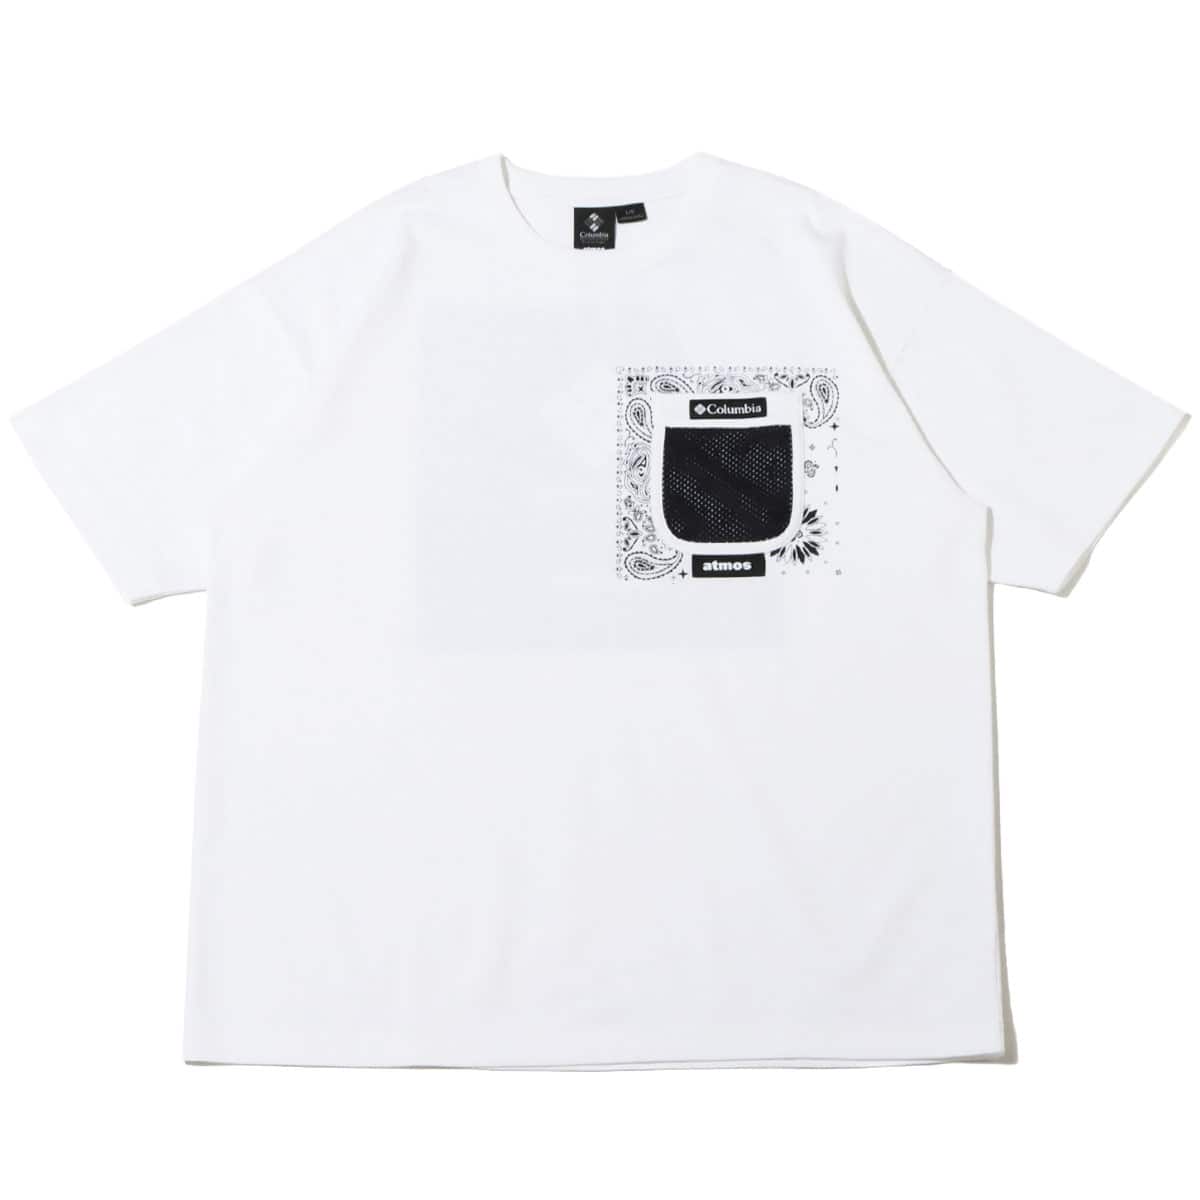 【XLサイズ】Colombia × atmos コラボTシャツ